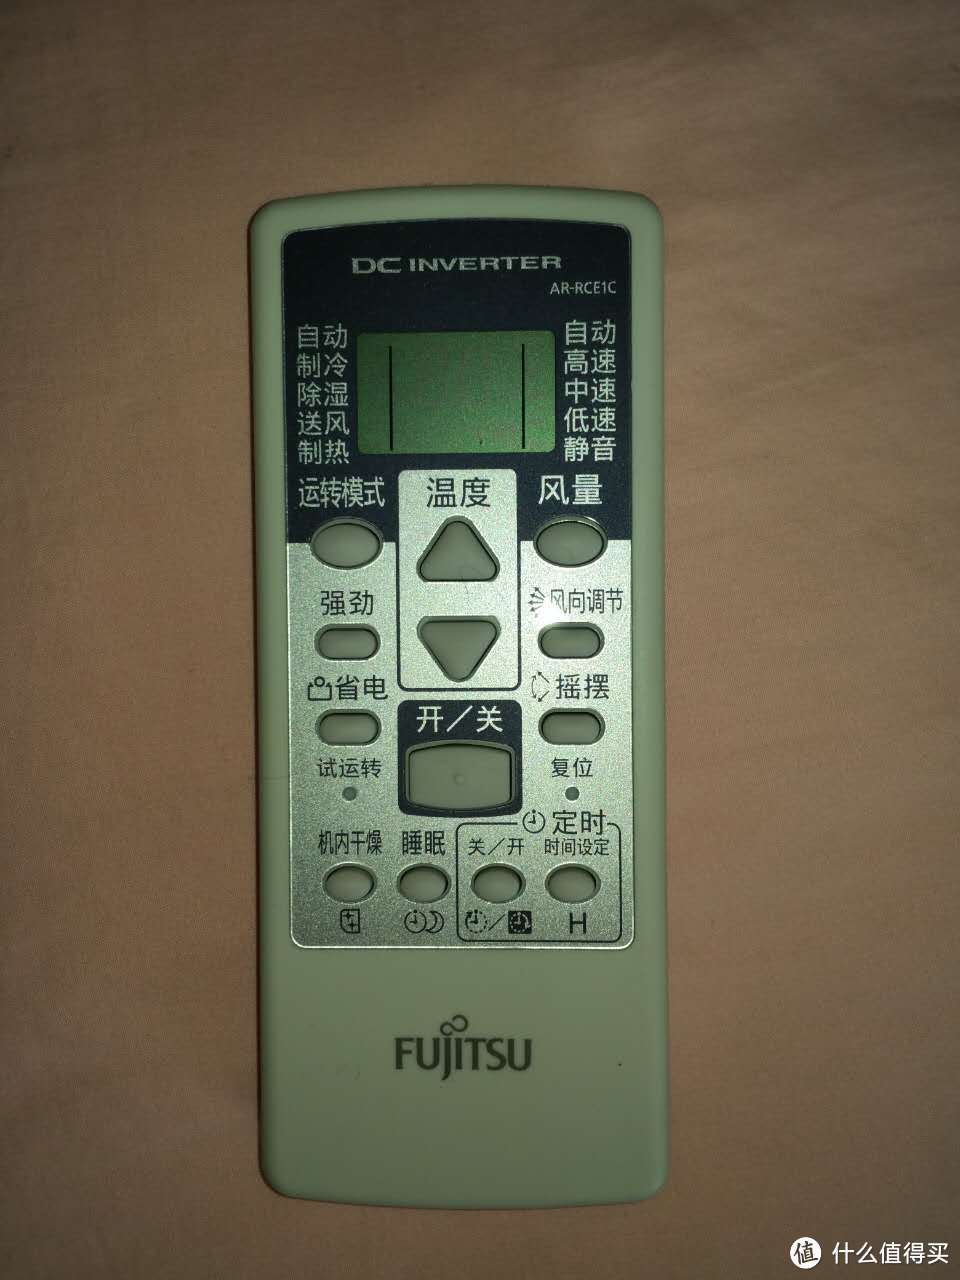 FUJITSU 富士通 全直流变频空调的晒单作业